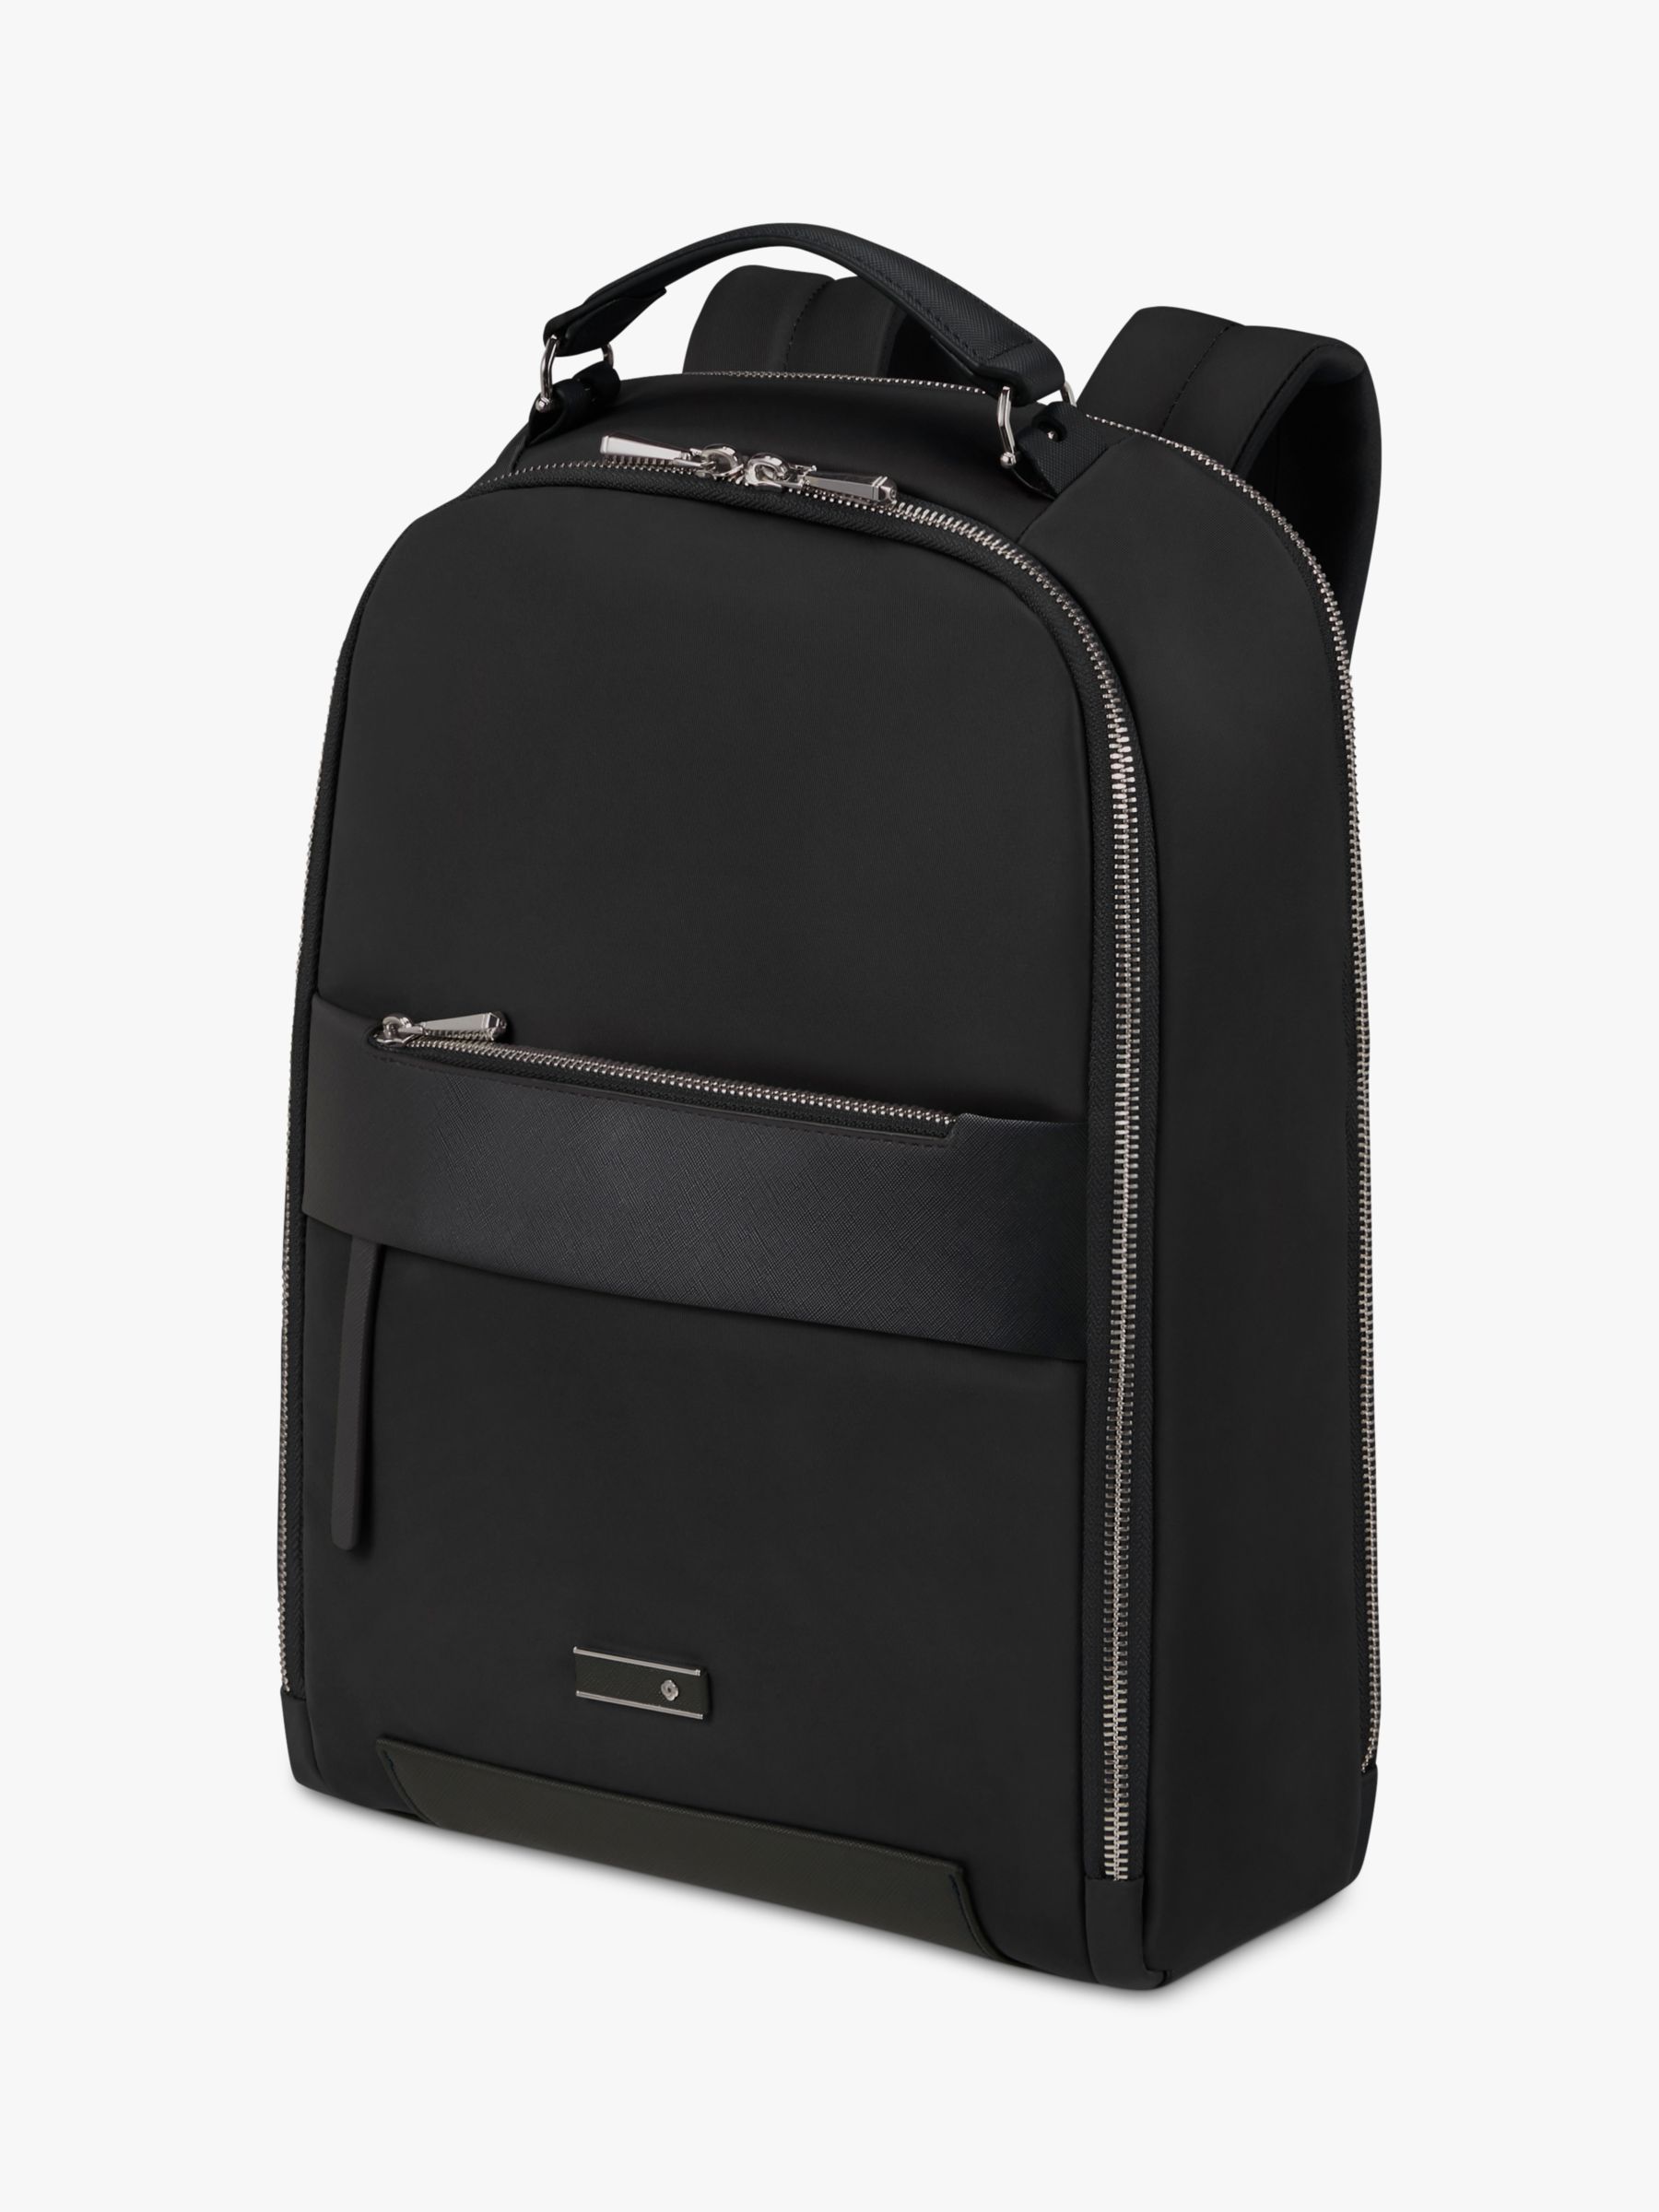 3 In 1 Laptop Backpack, 17.3 Inch Computer Bags For Men, Laptop Backpack  For Men, For Travel Bussiness School Men Women,dark Grey